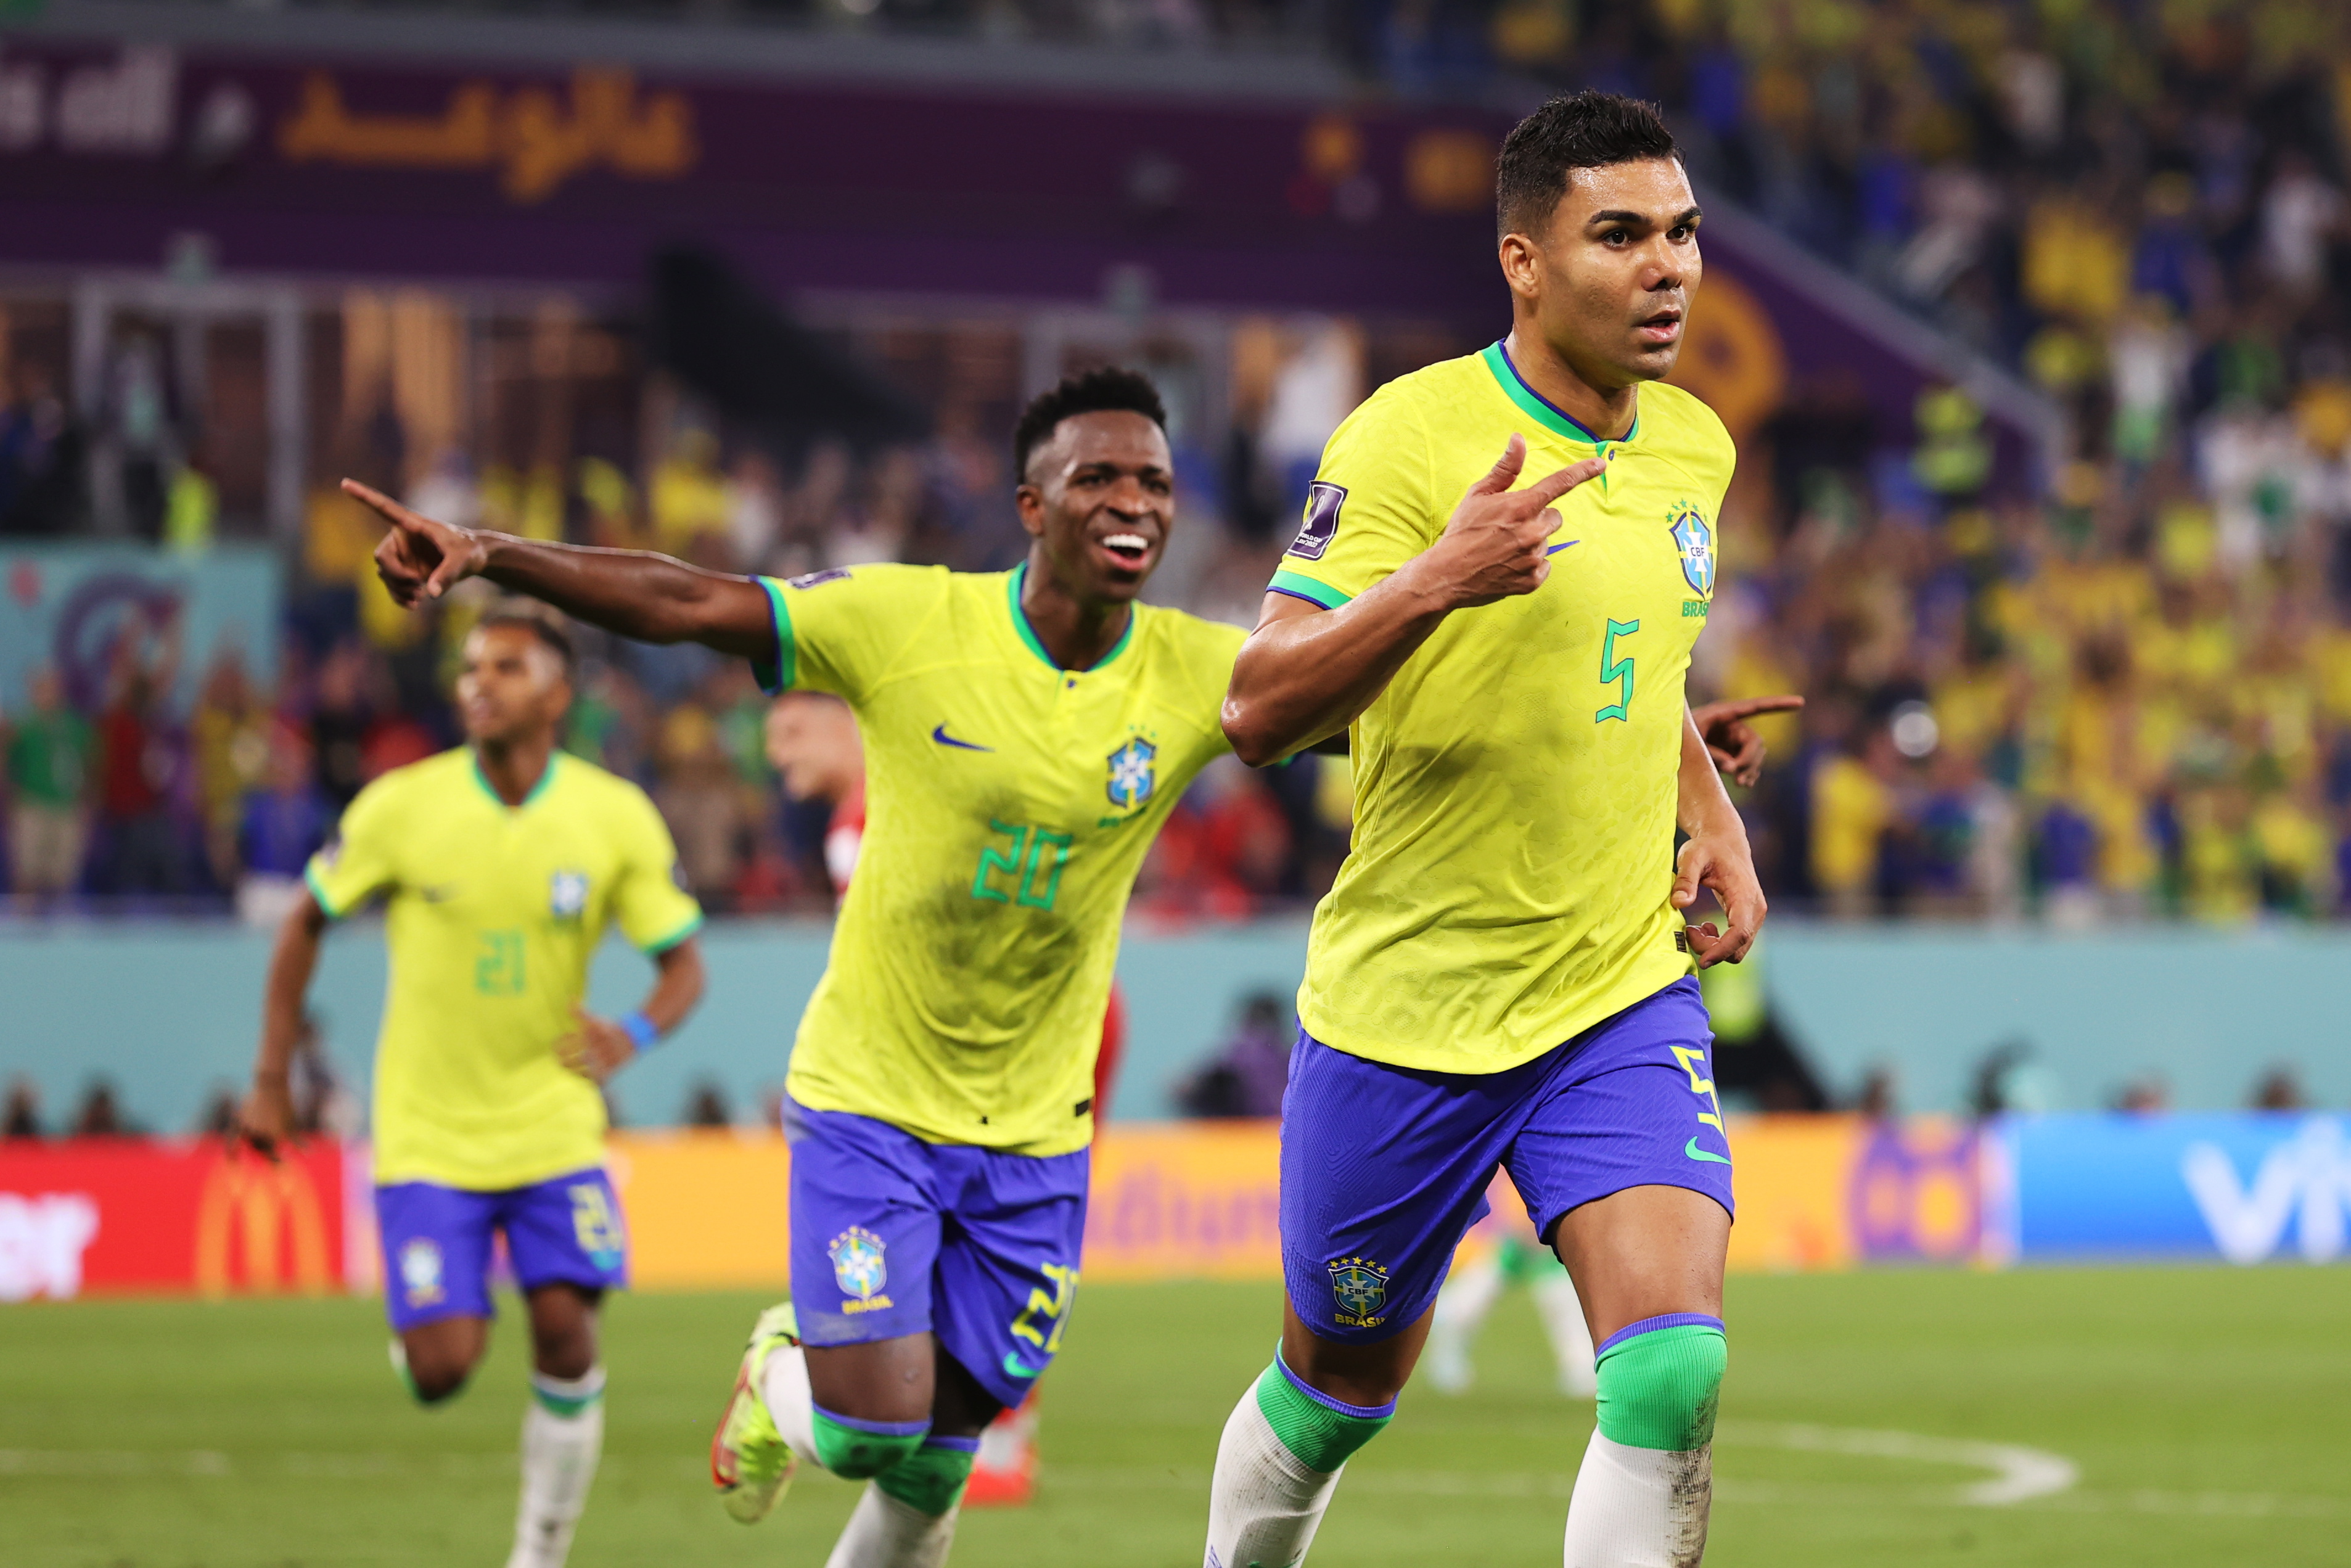 Casemiro sacó provecho de su gran pegada y definió la victoria para Brasil con un golazo. (Foto Prensa Libre: EFE)